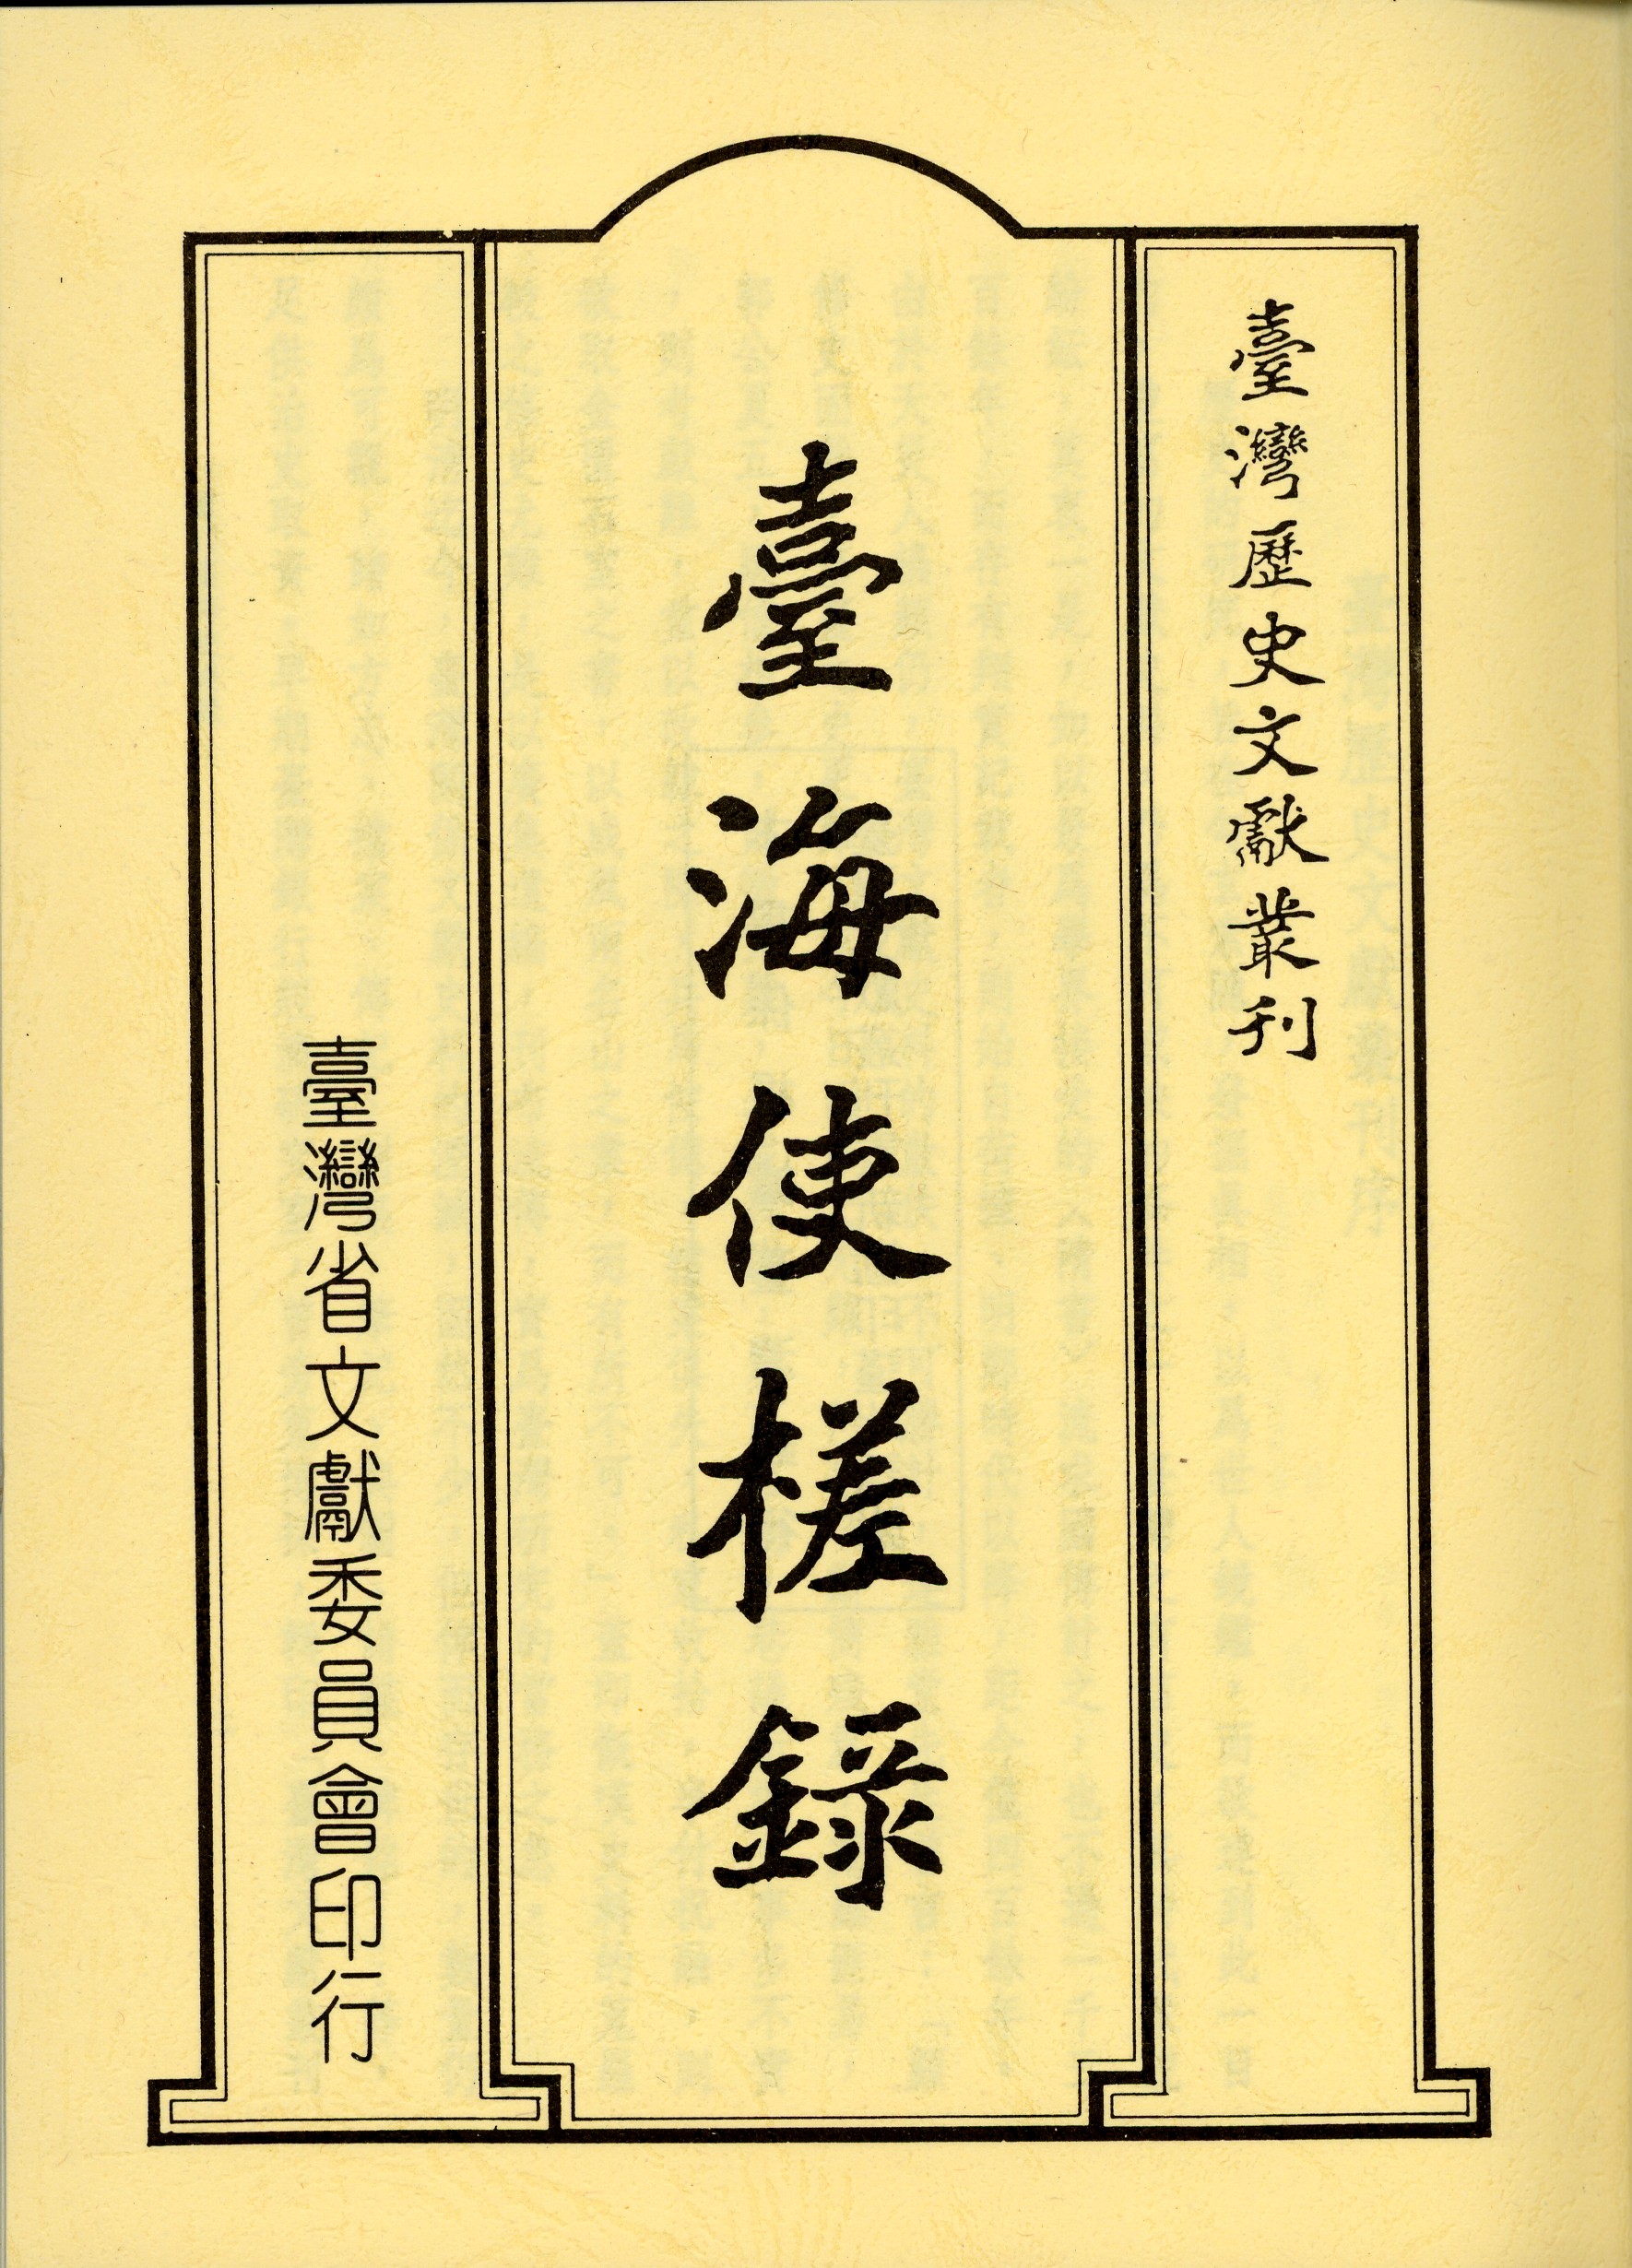 黃叔璥: 臺海使槎錄 (Classical Chinese language, 臺灣省文獻委員會)